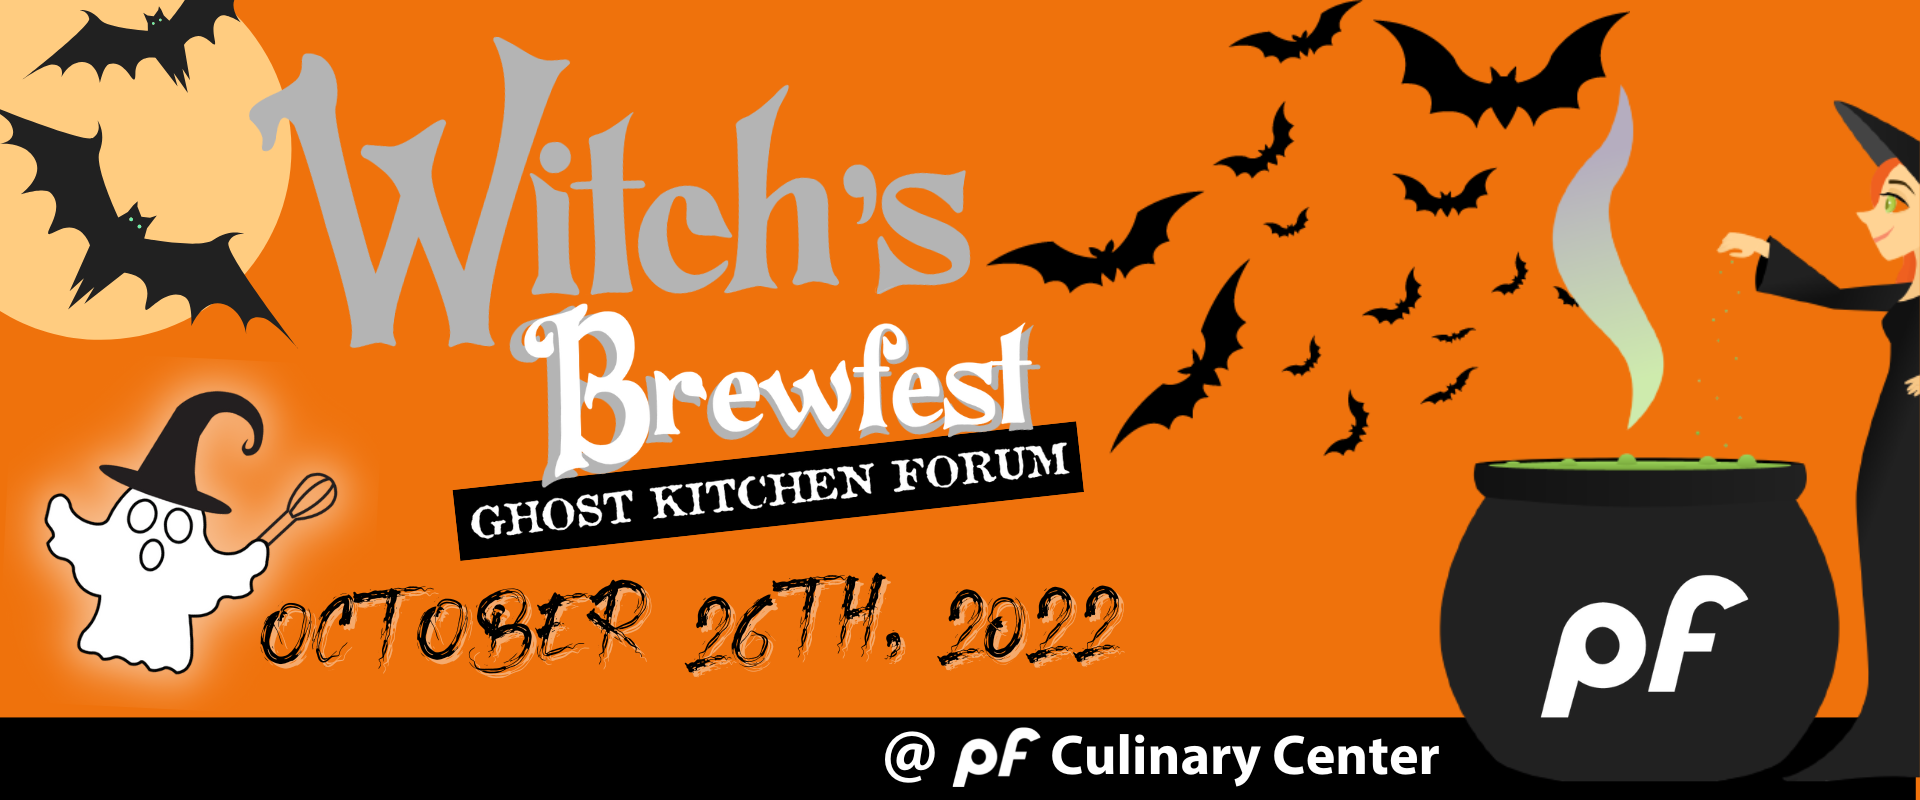 Ghost Kitchen Forum 2022: Witch’s Brewfest